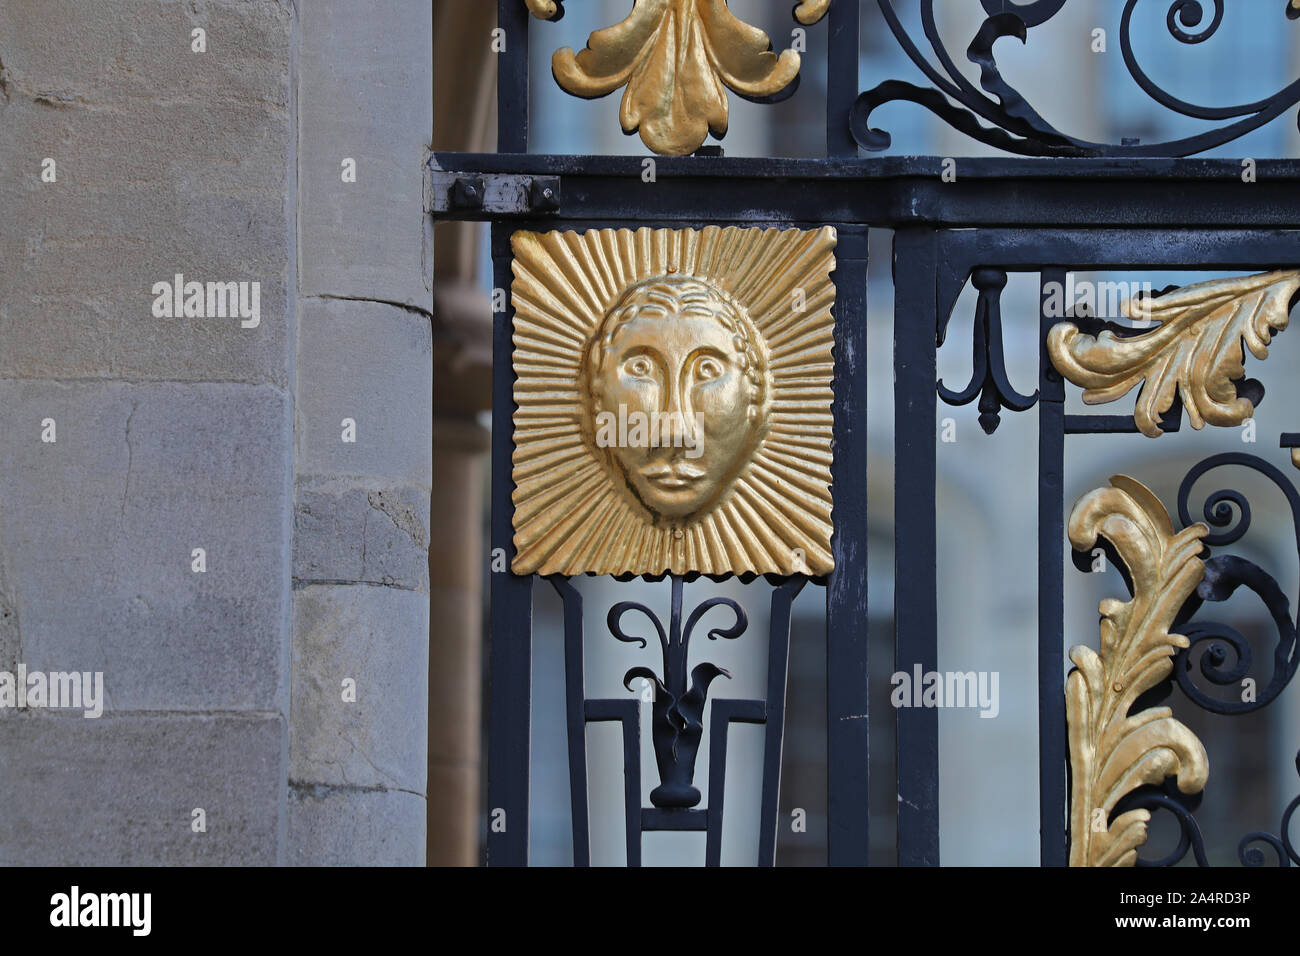 Dettaglio di un volto e ornati in ferro battuto sul lato cancello di ingresso per tutte le anime College di Oxford un costituente e laureati' college dell'università Foto Stock